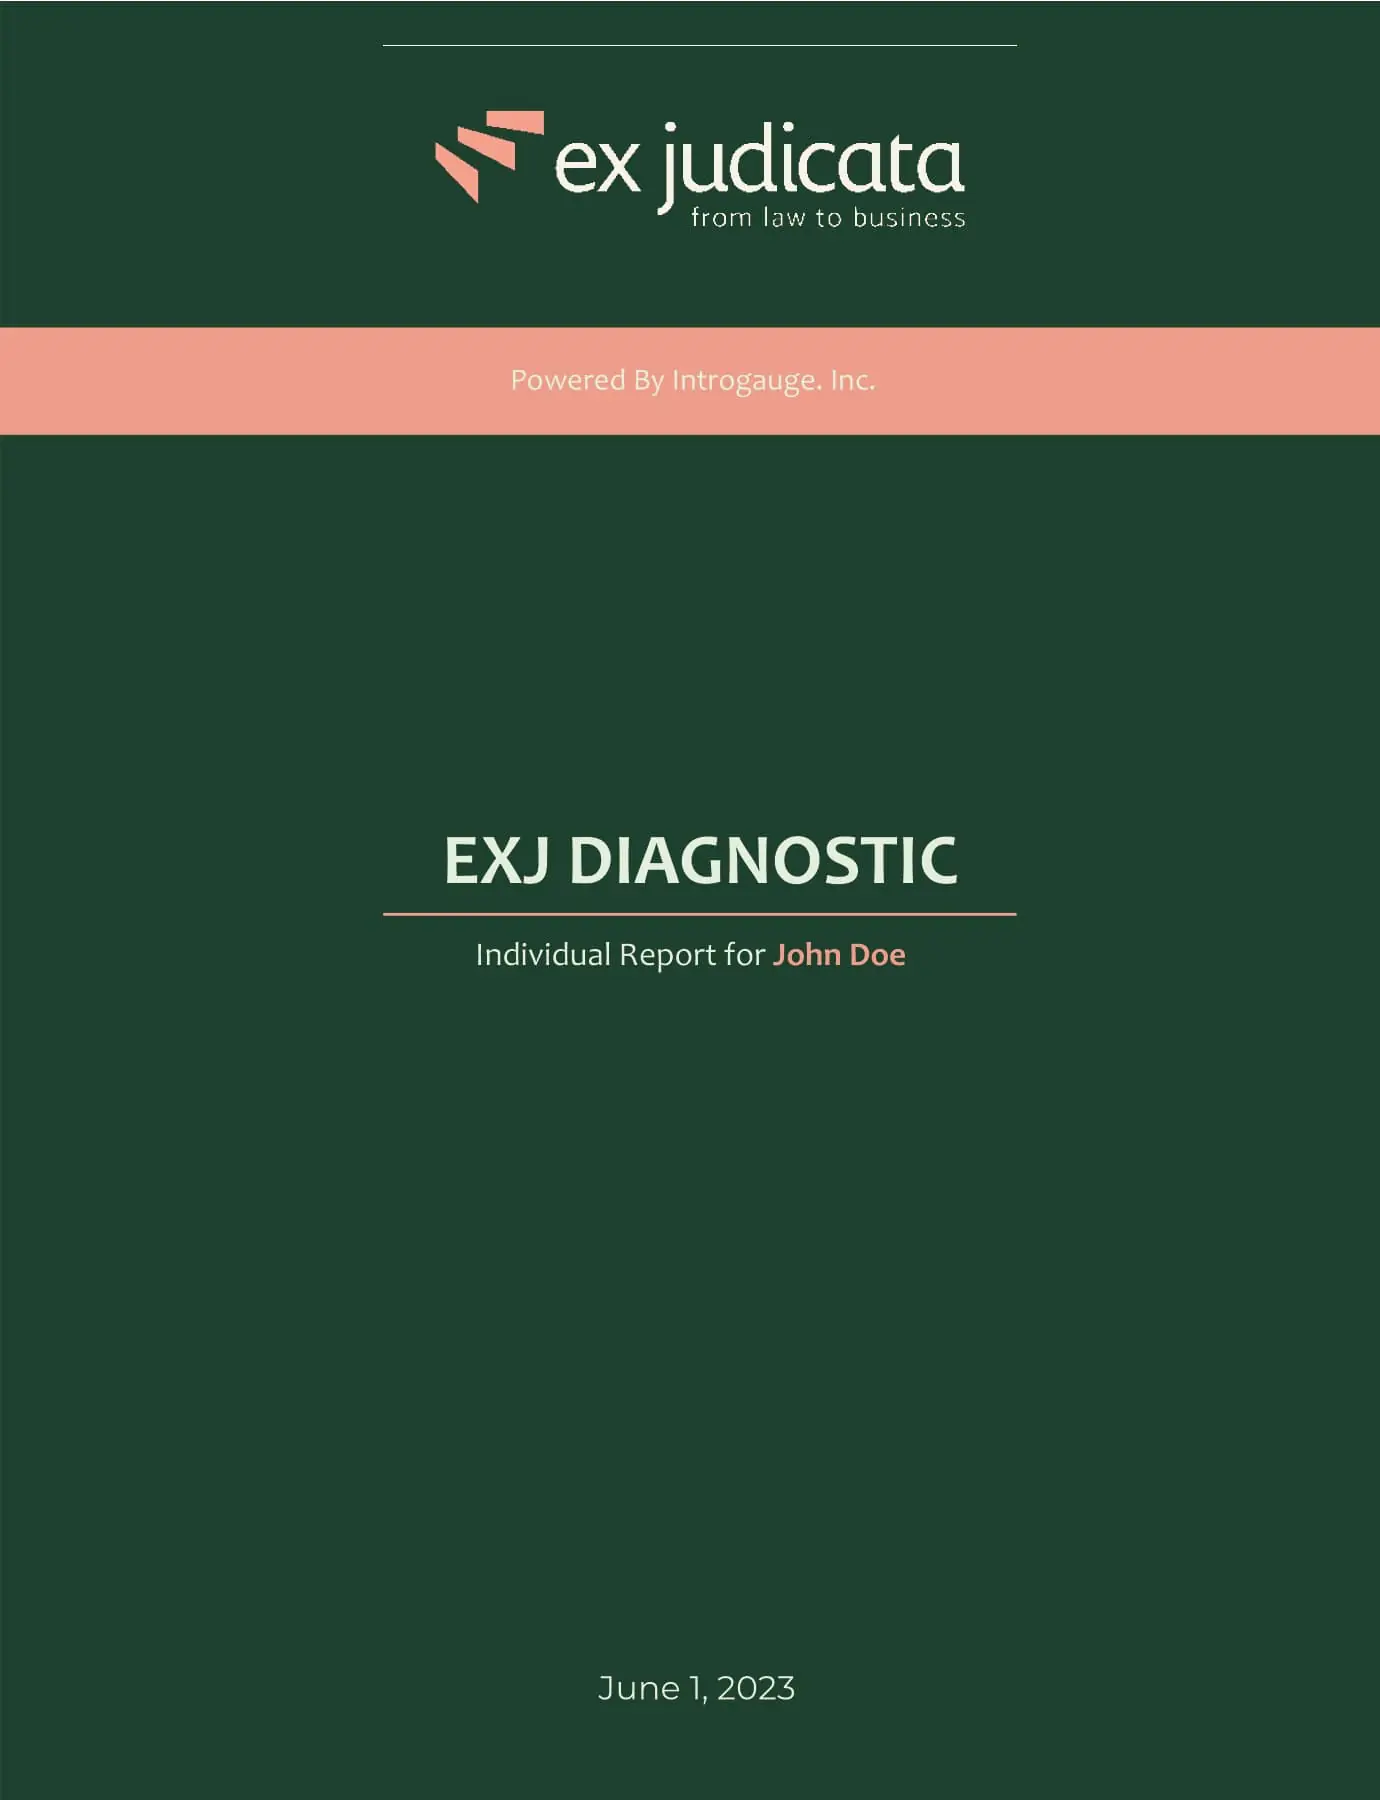 exj diagnostic report part 1 1 (1)